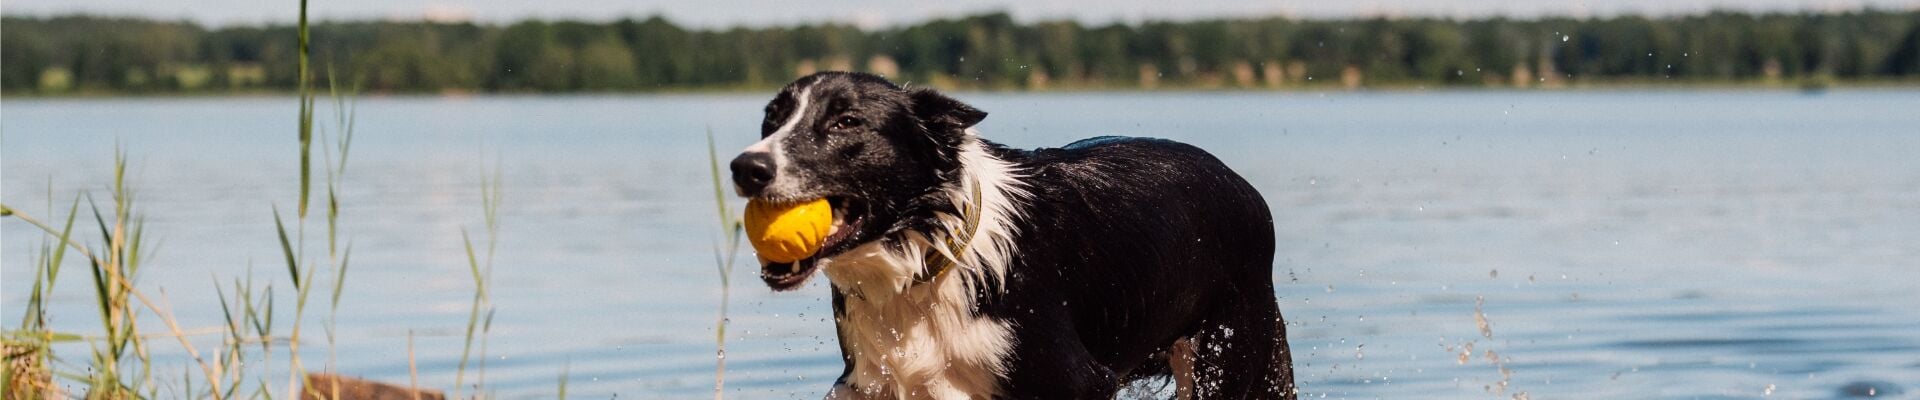 Un perro jugando con una pelota en un lago 